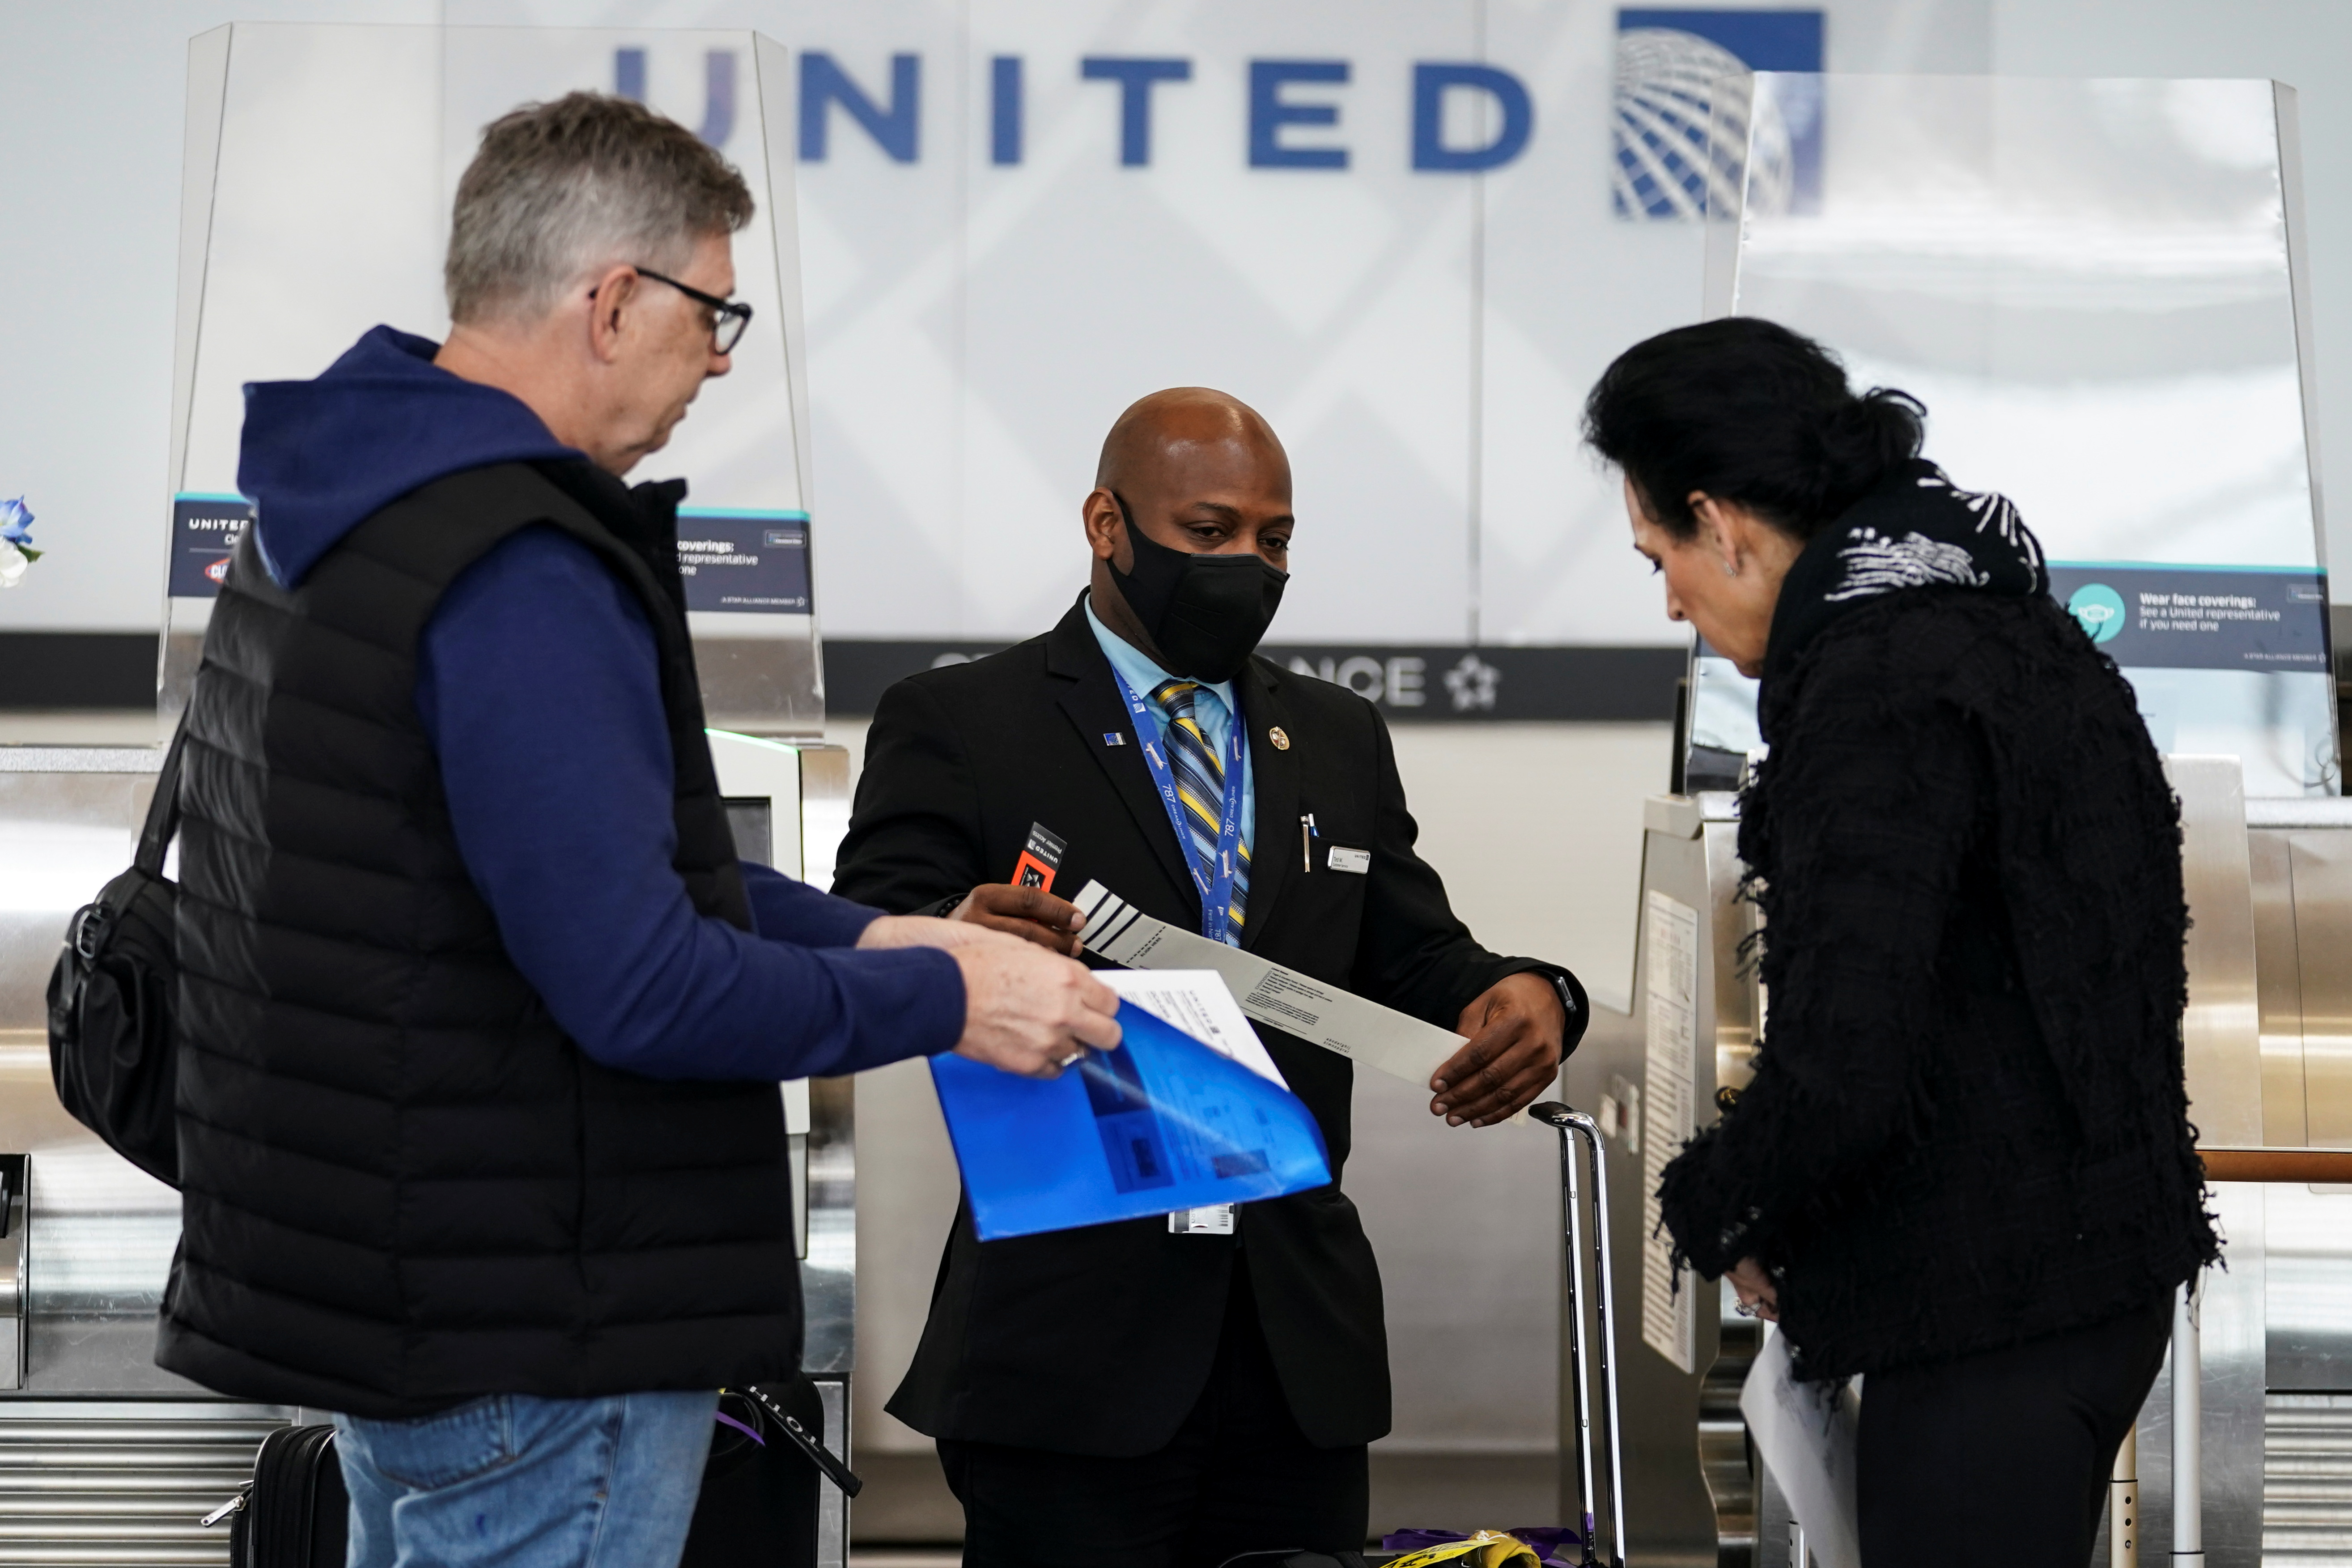 Air travel resumes amid lifting of COVID-19 mask mandate at Reagan National Airport in Arlington, Virginia